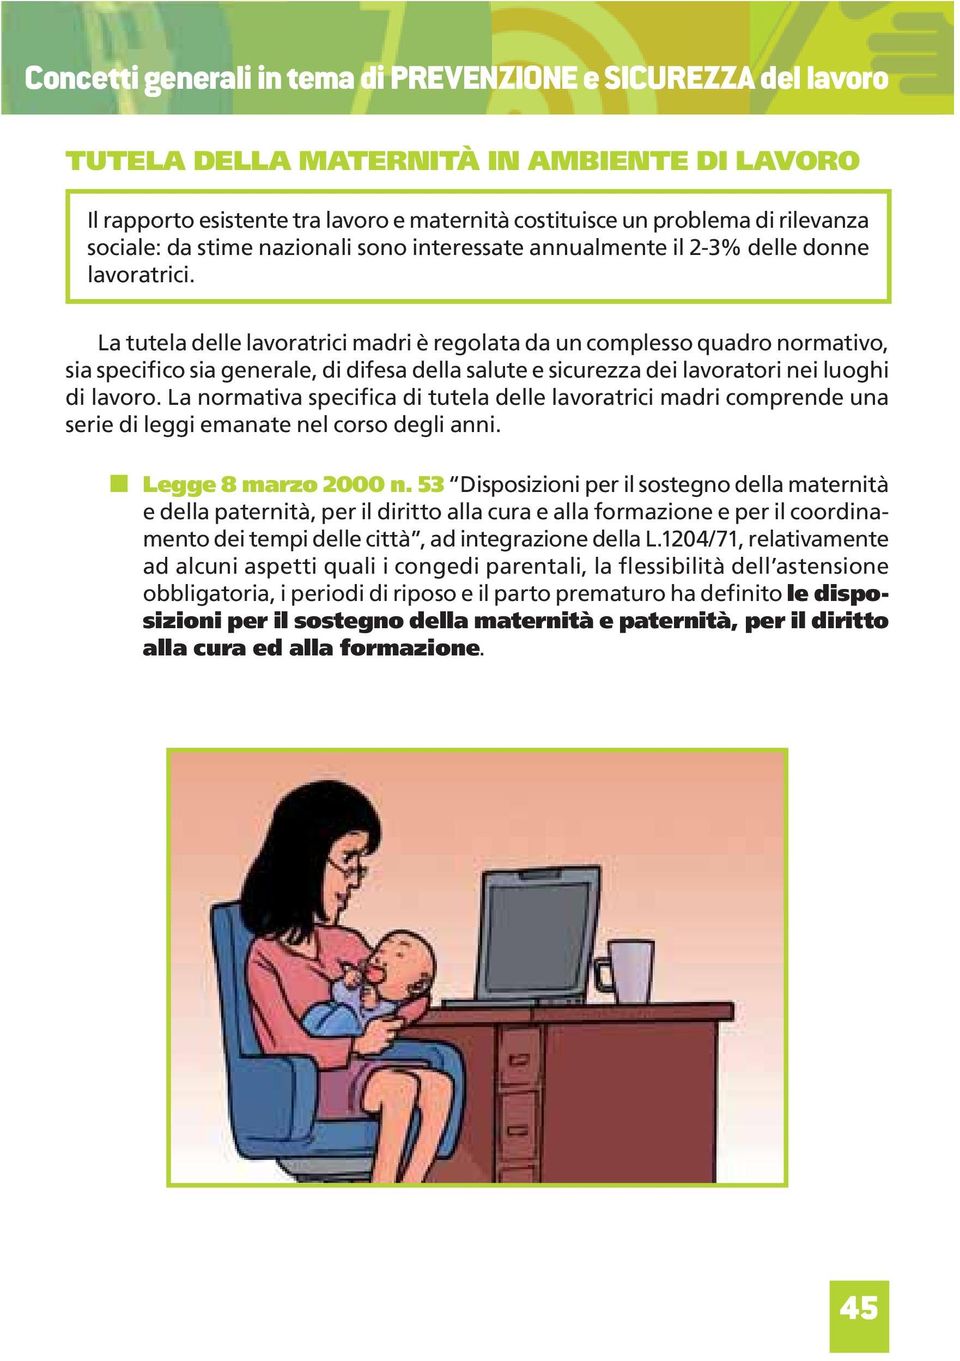 La tutela delle lavoratrici madri è regolata da un complesso quadro normativo, sia specifico sia generale, di difesa della salute e sicurezza dei lavoratori nei luoghi di lavoro.